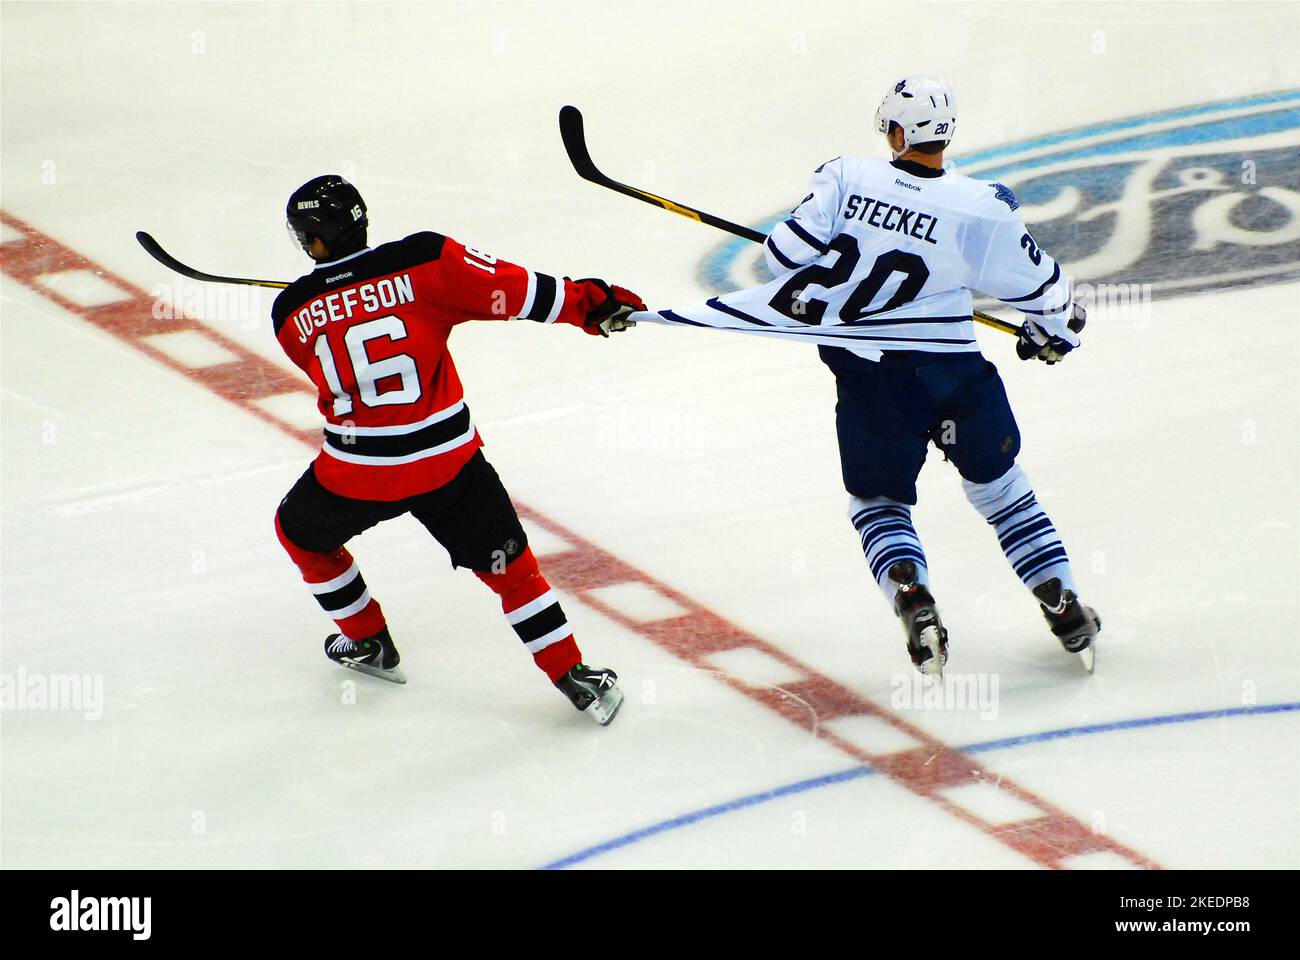 Un joueur de hockey tire le maillot de son adversaire Banque D'Images